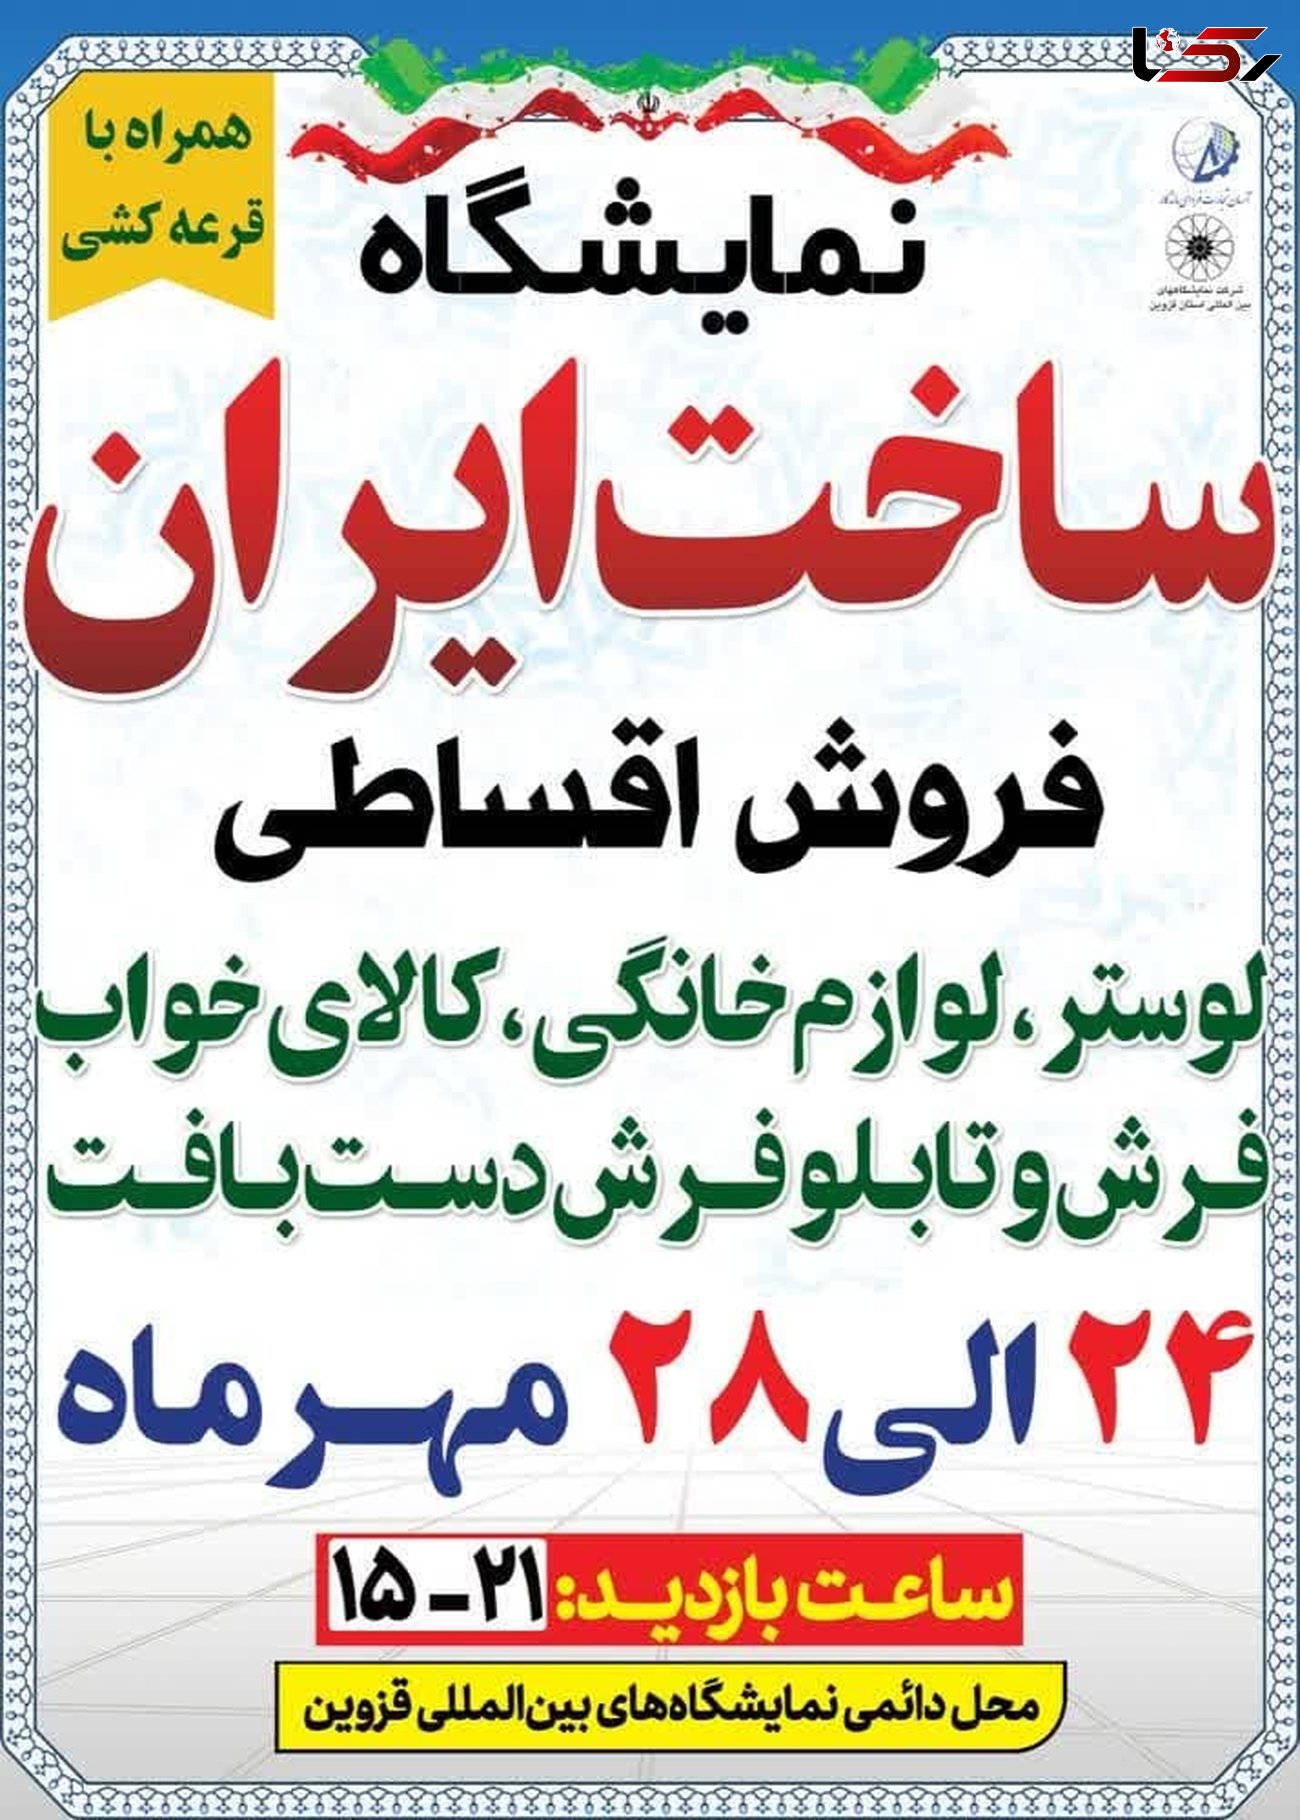 برگزاری نمایشگاه ساخت ایران همراه با قرعه کشی و فروش اقساطی کالا از 24 مهر ماه
